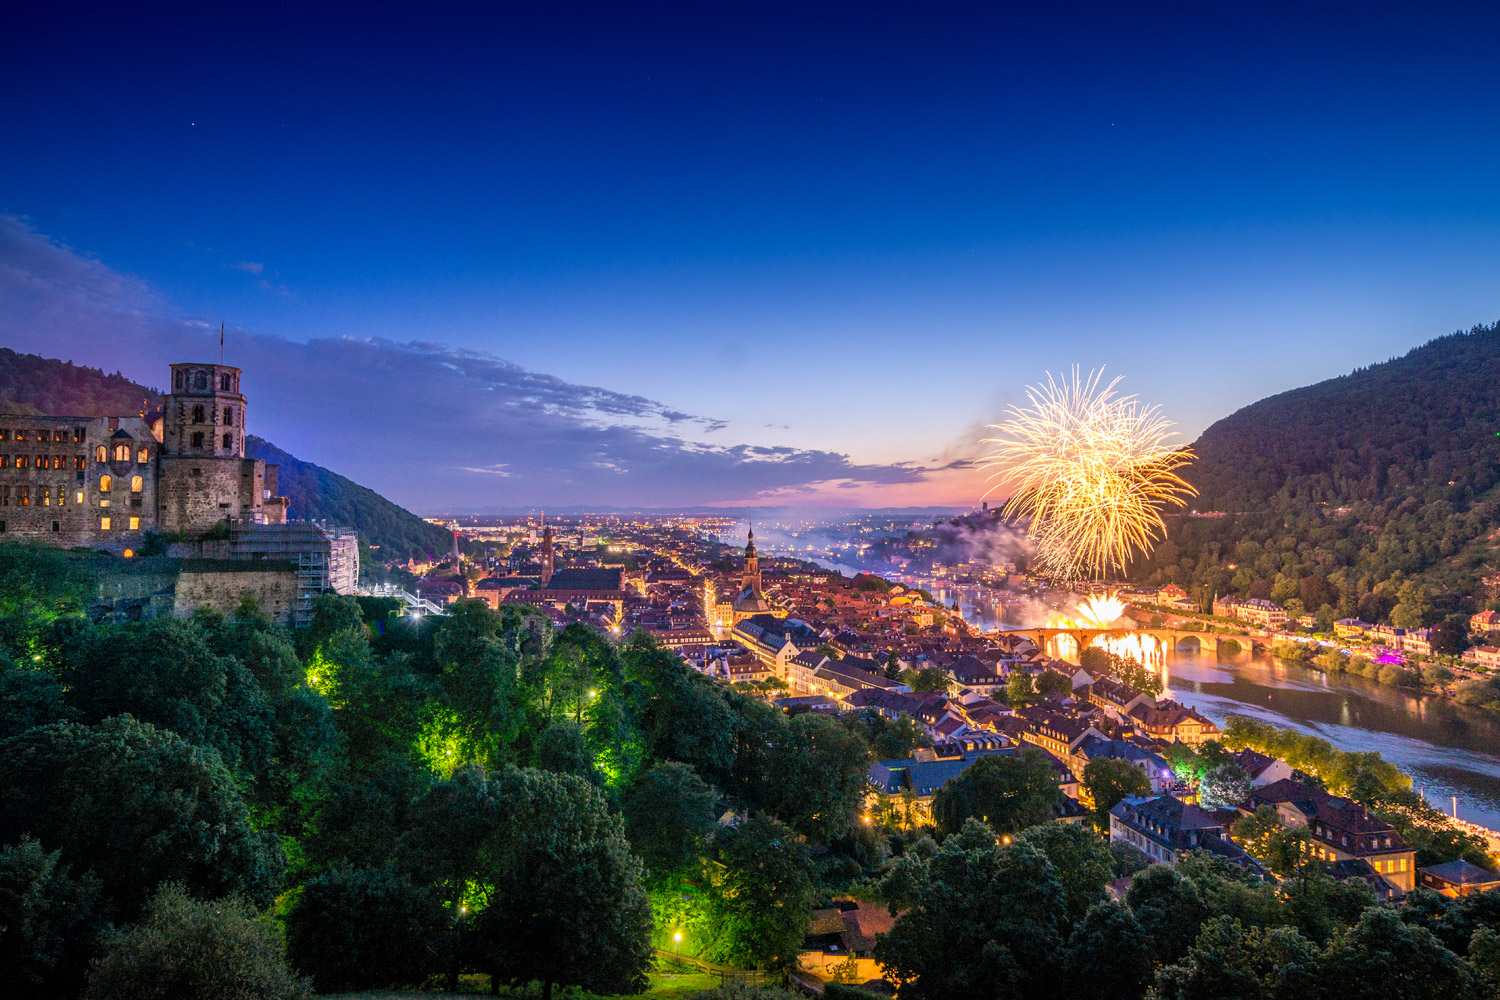 Panoramablick auf Heidelberg bei Nacht mit beleuchtetem Schloss. Auf der rechten Seite ist ein großes Feuerwerk über dem Fluss.